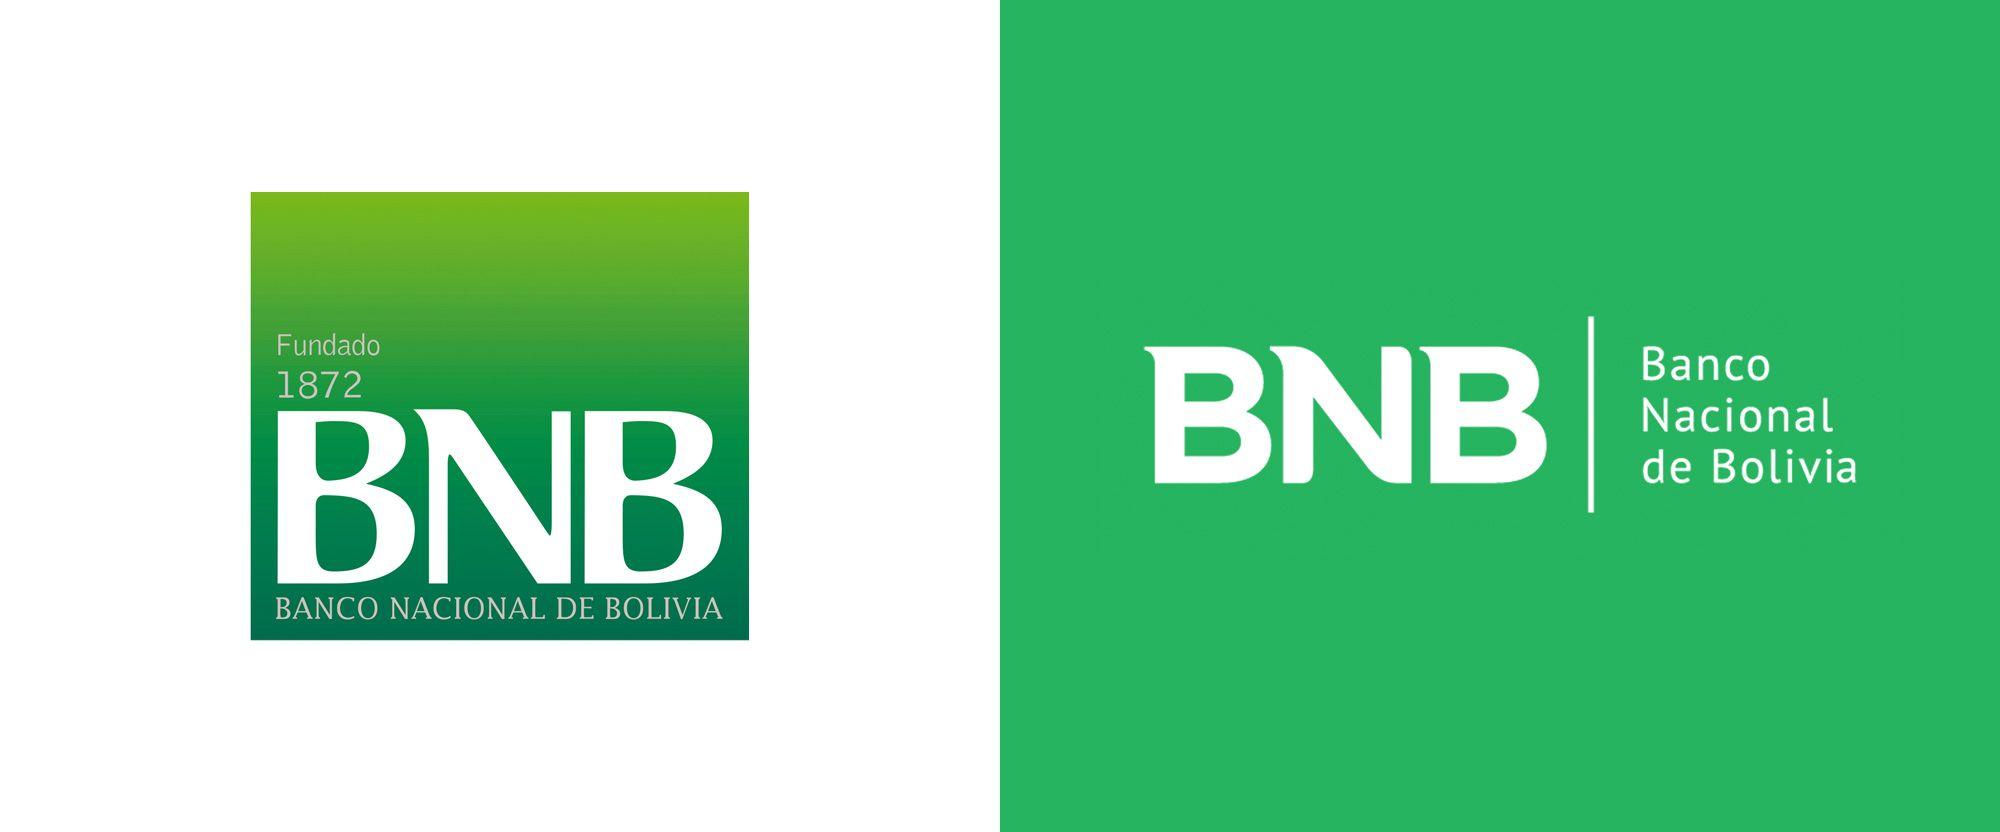 1872 Logo - Brand New: New Logo for Banco Nacional de Bolivia